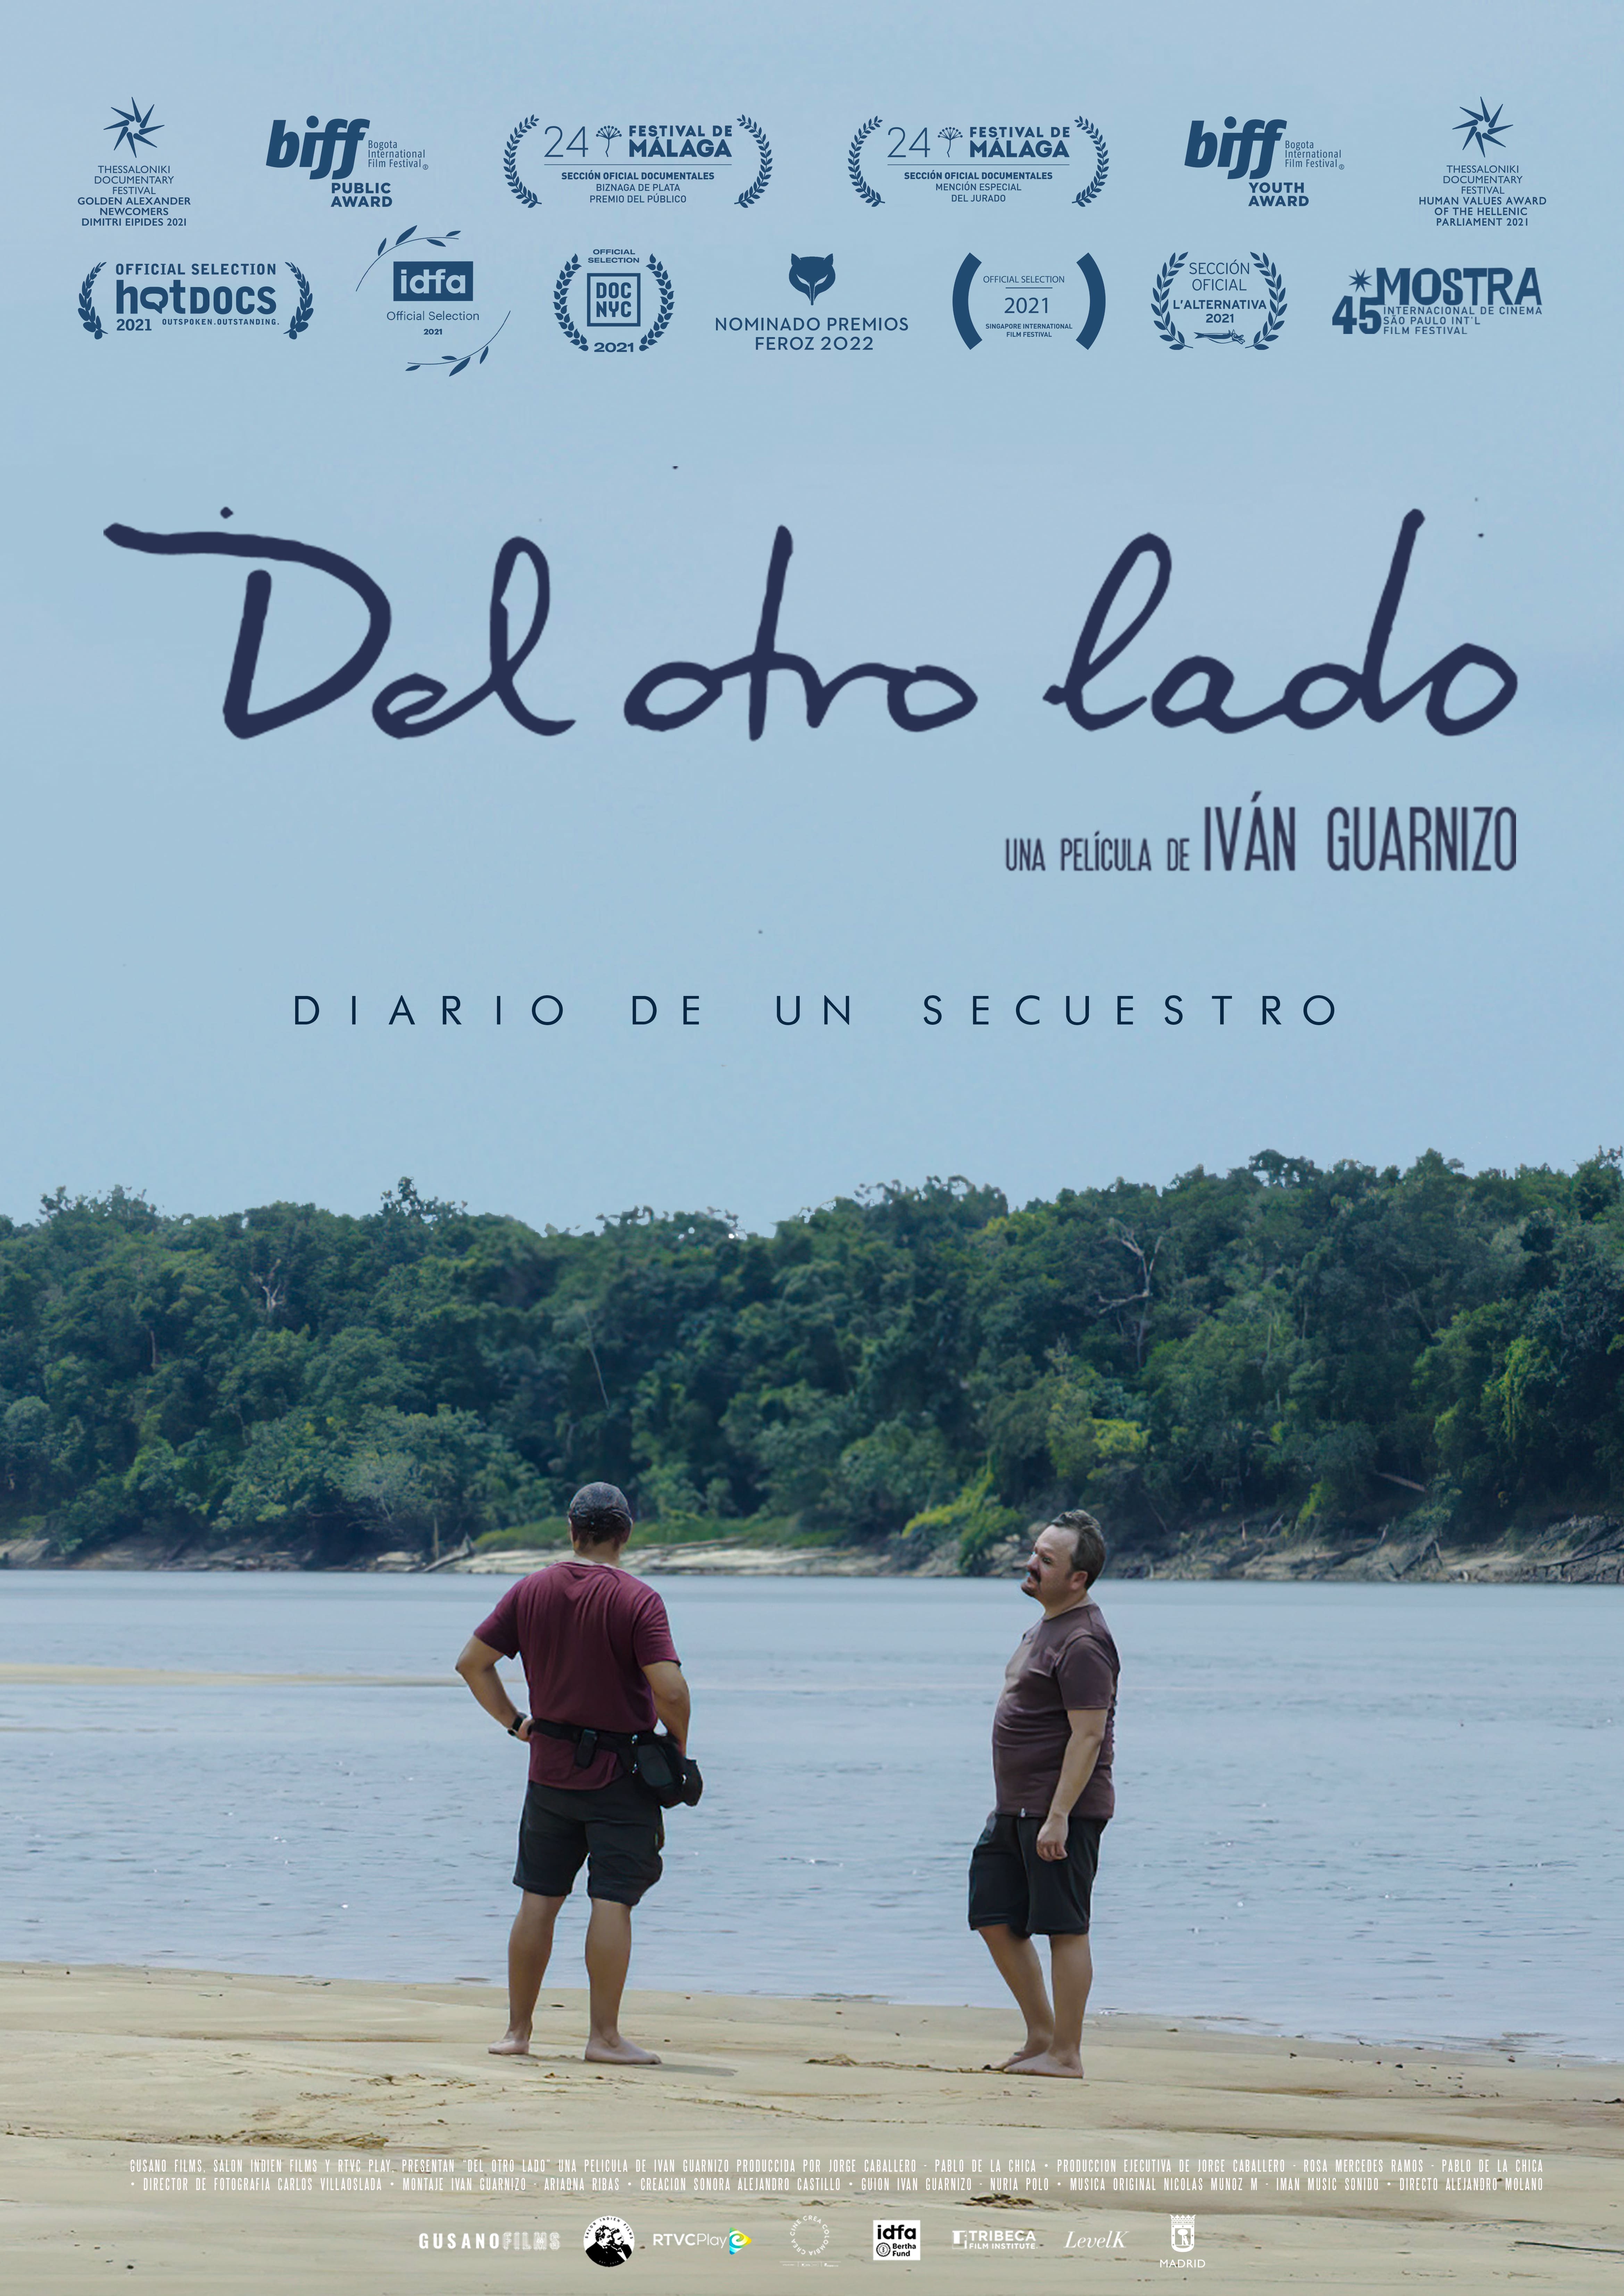 Projecció del documental 'Del otro lado', d'Iván Guarnizo, Cinema La Calàndria